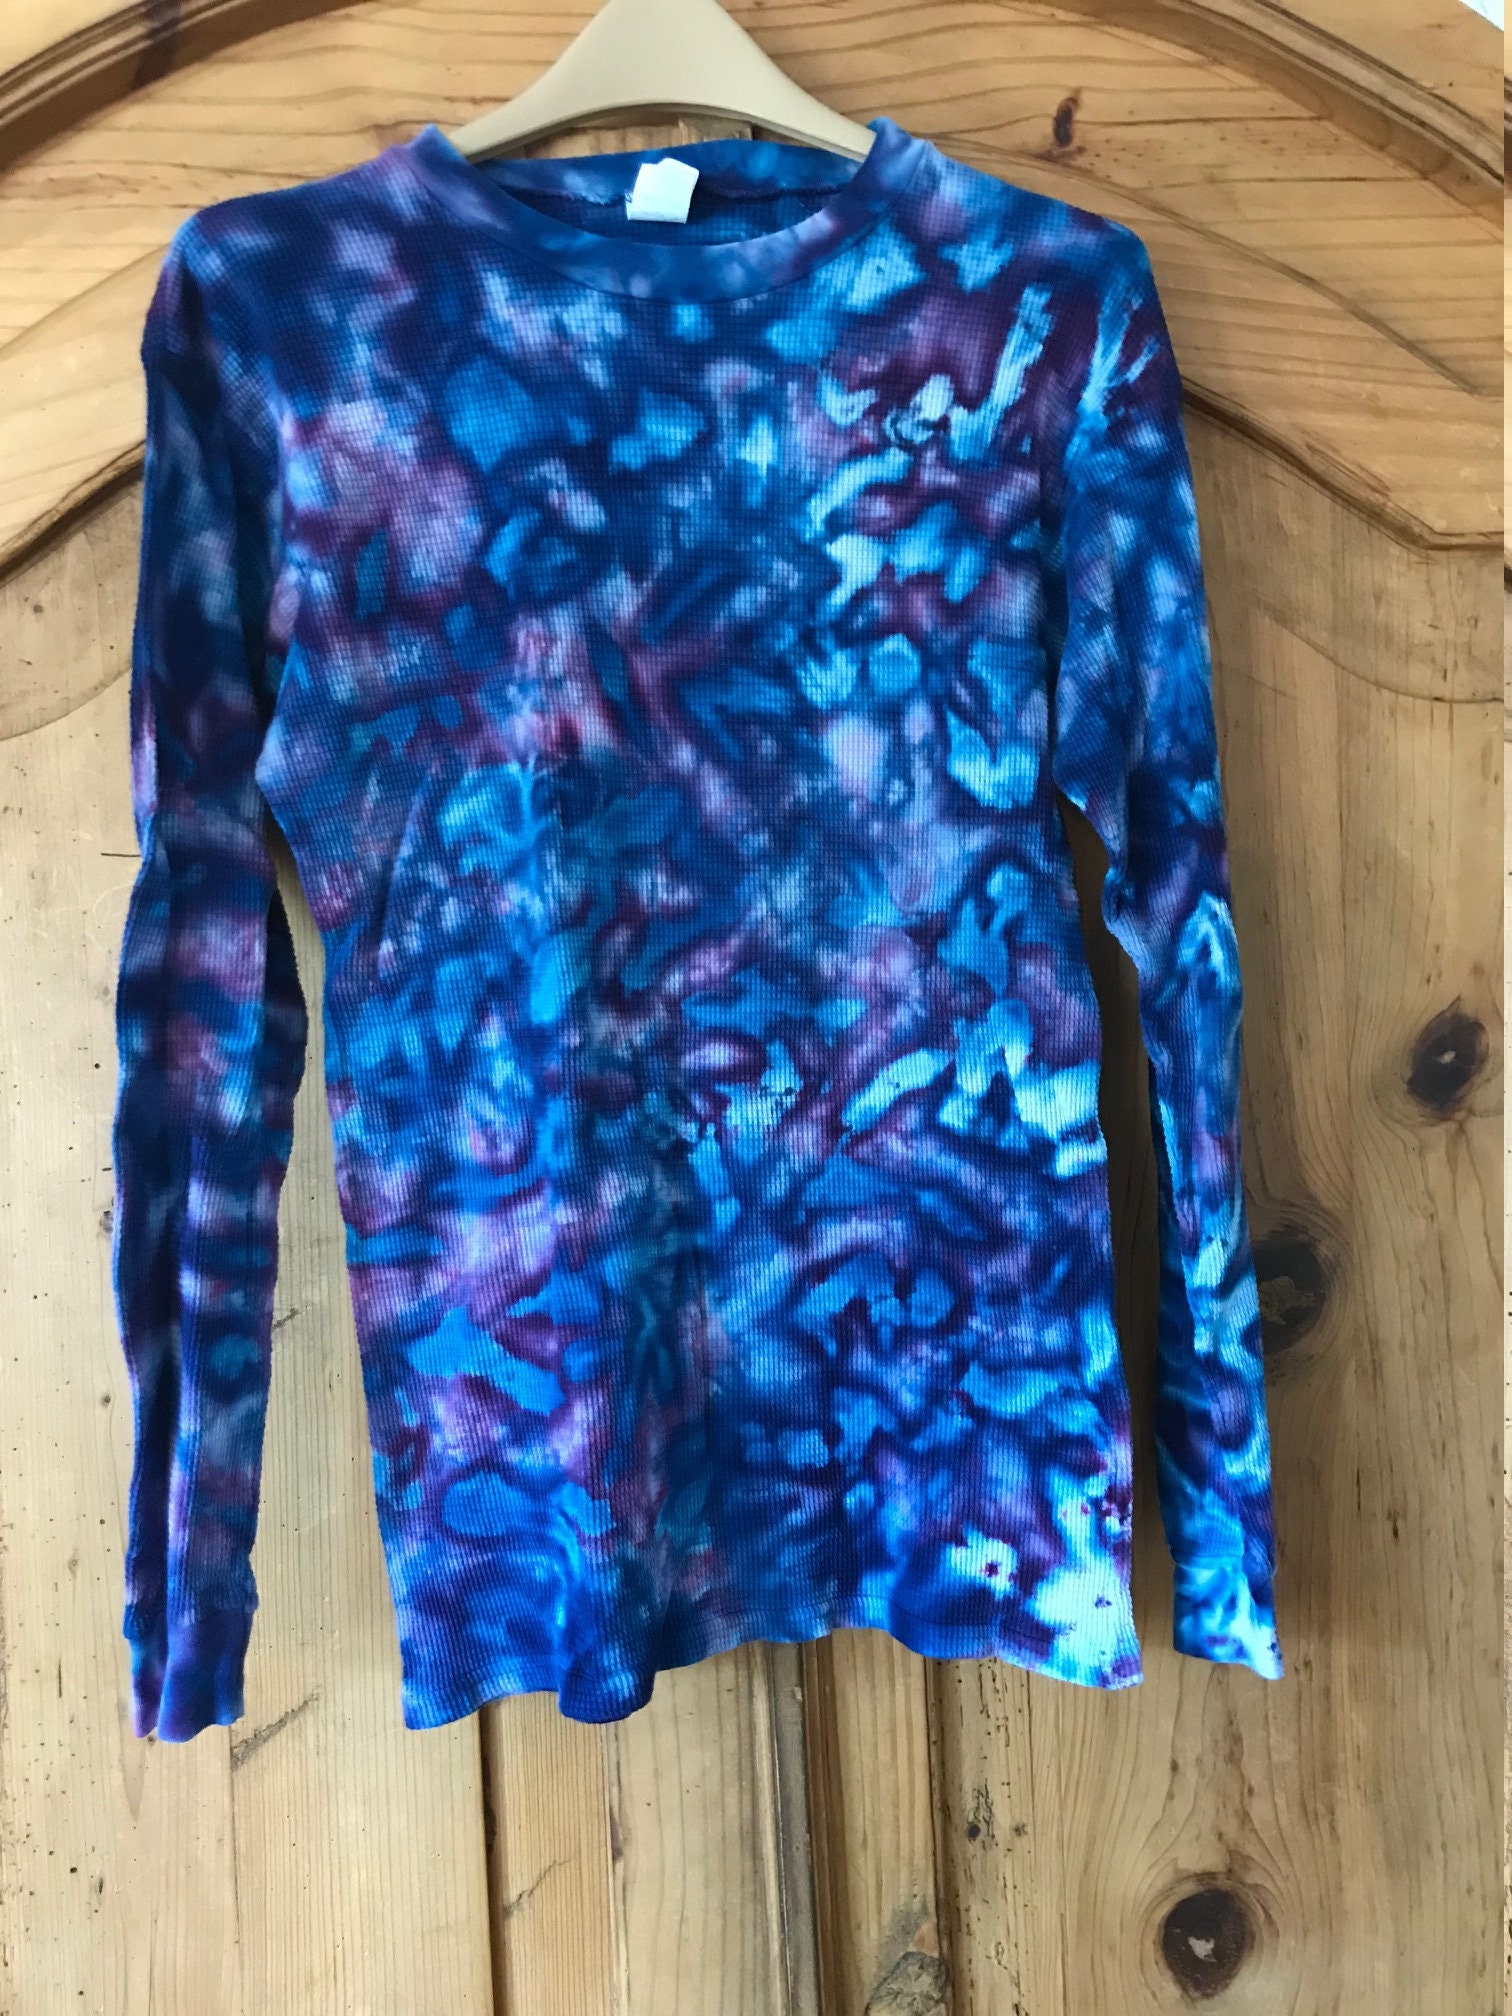 Spring Awakening Crumple Tie Dye T-Shirt Small – Woof Dyes LLC